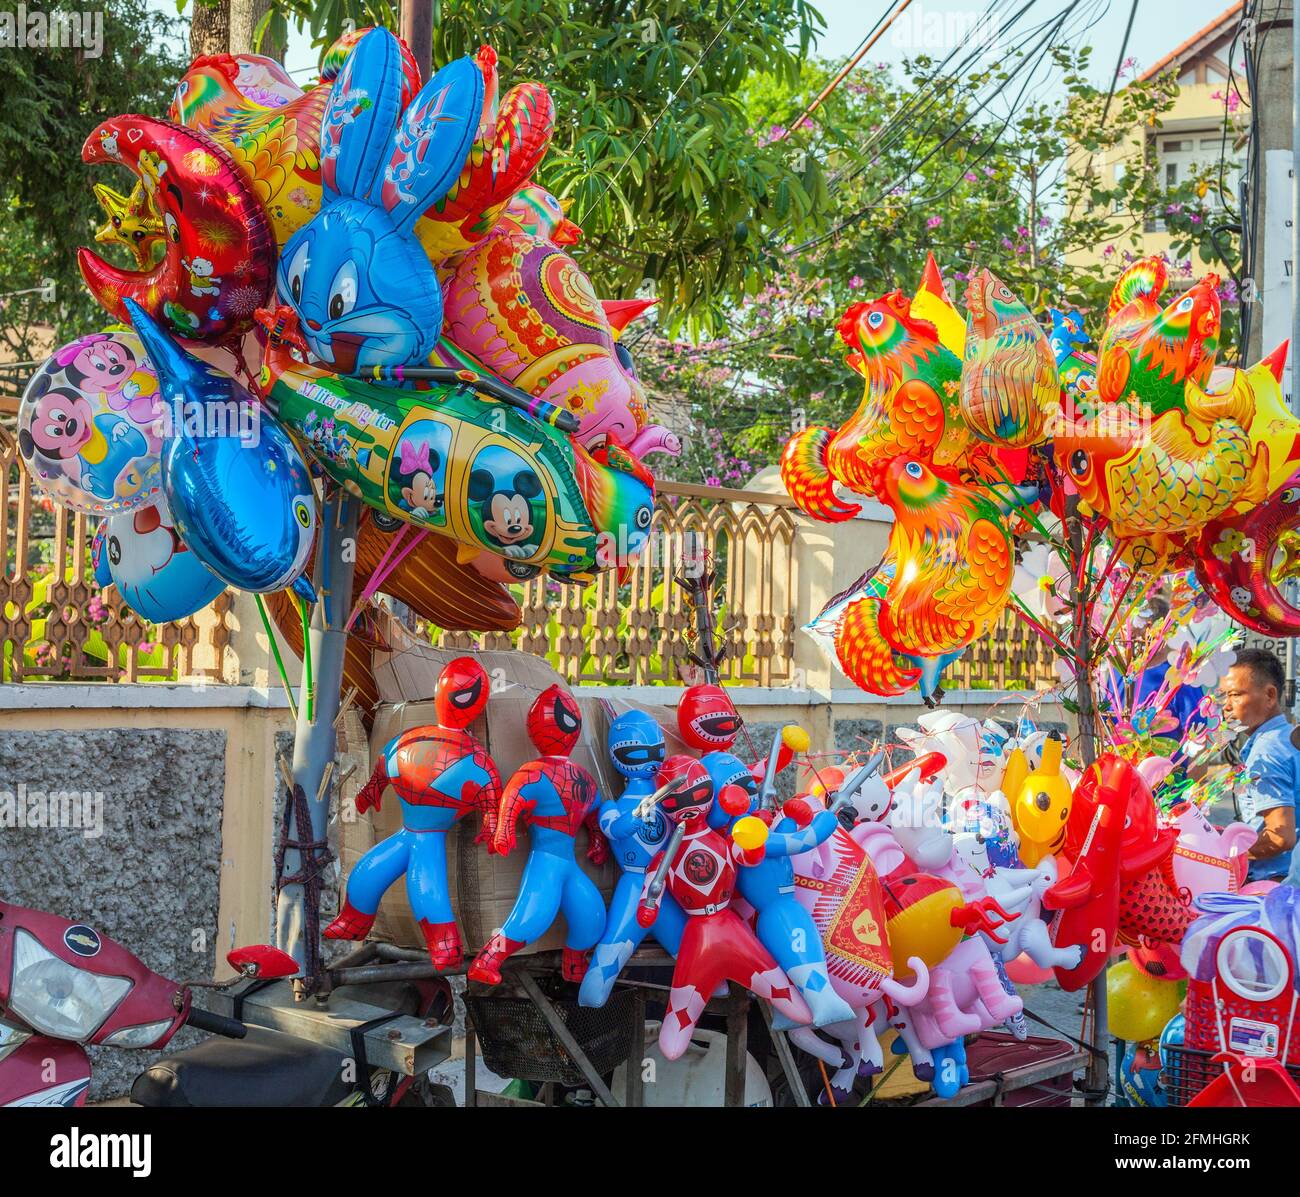 Grosses ballons colorés en vente sur le trottoir, Hoi an, Vietnam Banque D'Images